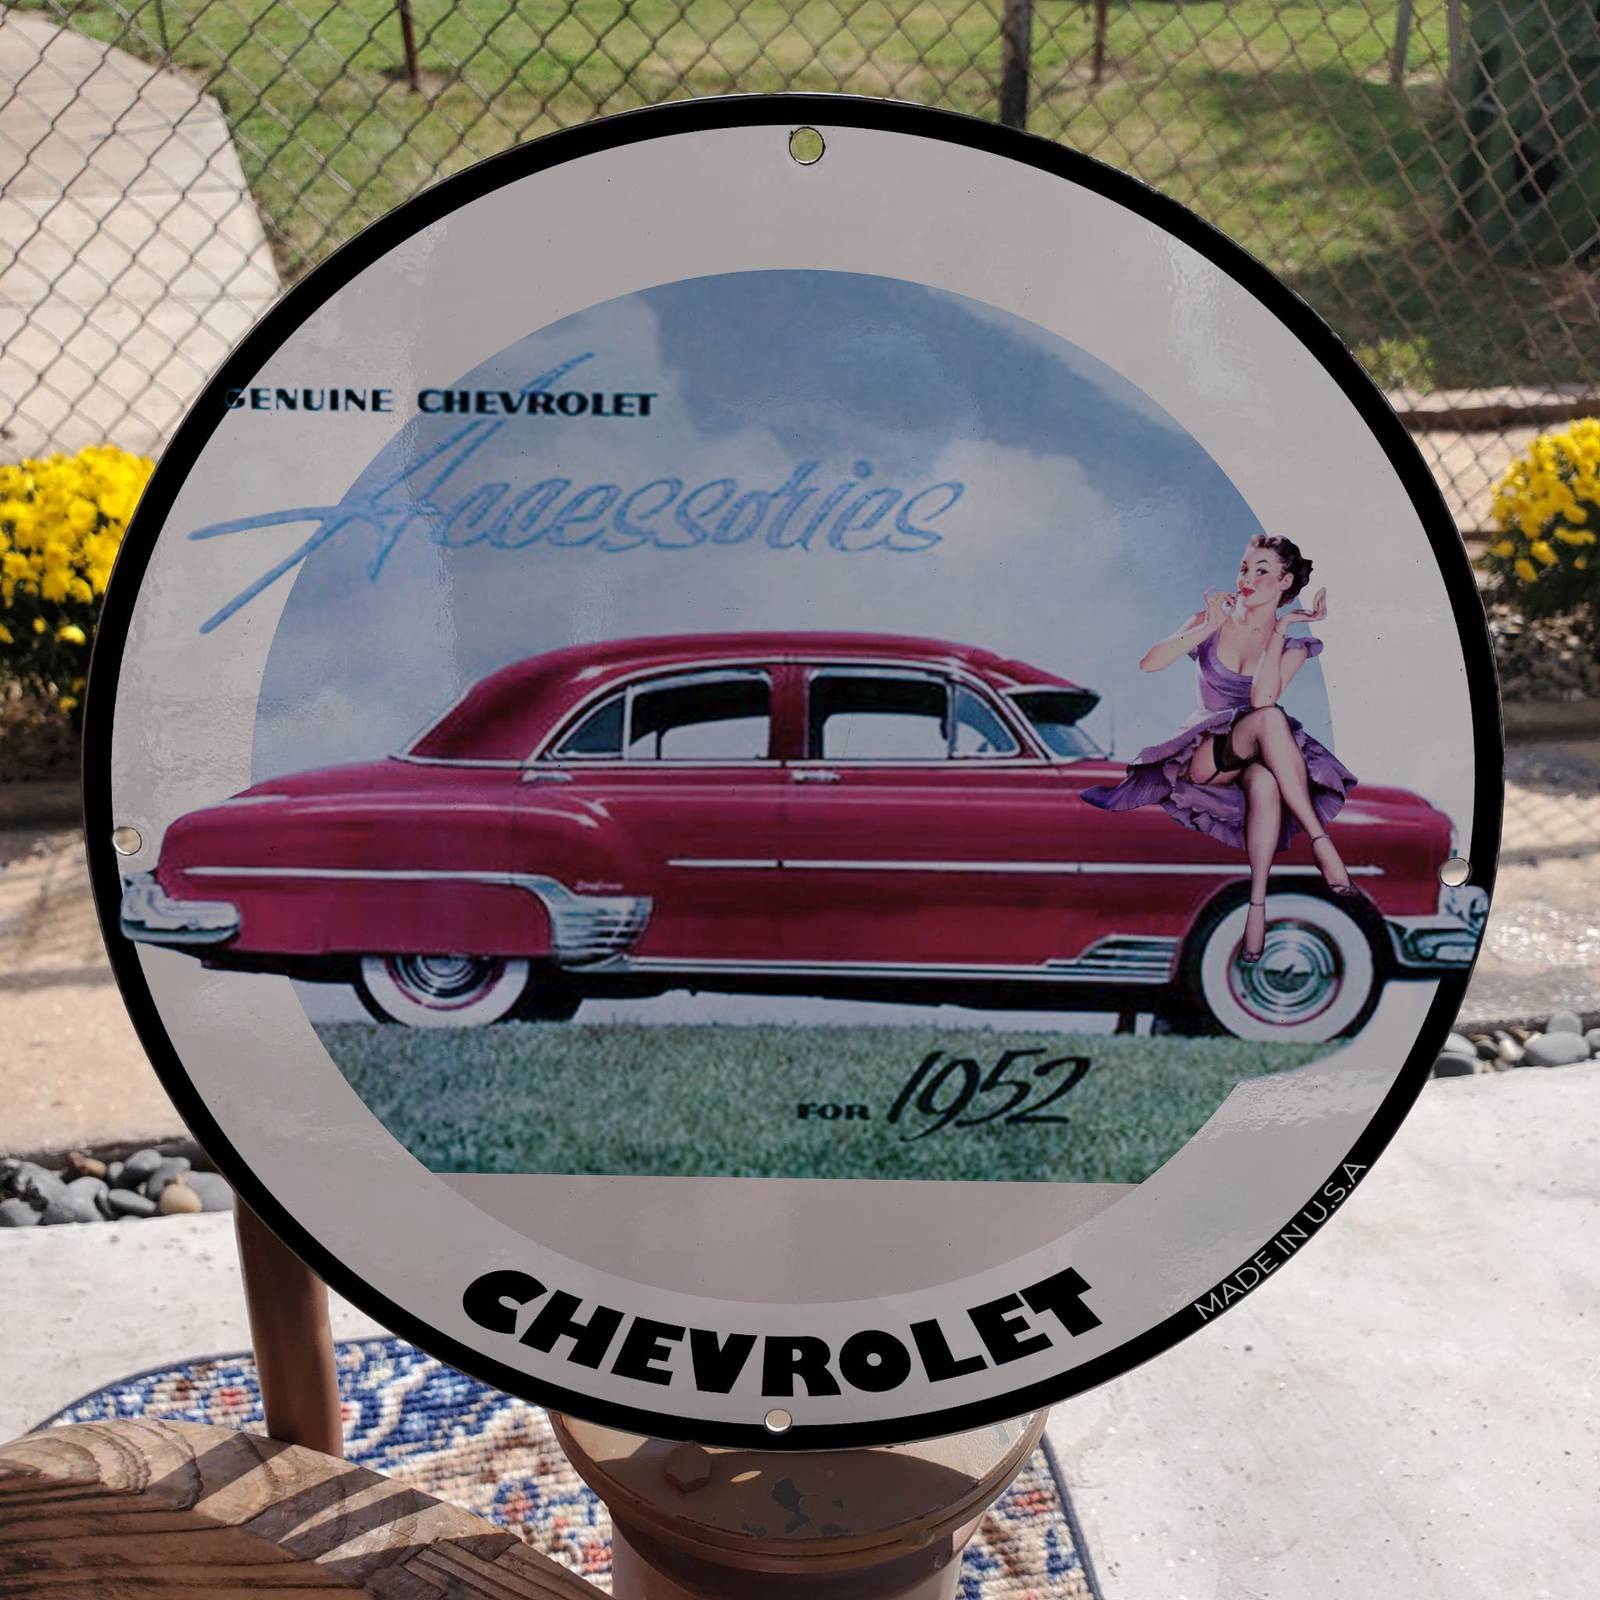 Vintage 1952 Chevrolet Automobile Accessories Porcelain Gas & Oil Pump Sign - $125.00